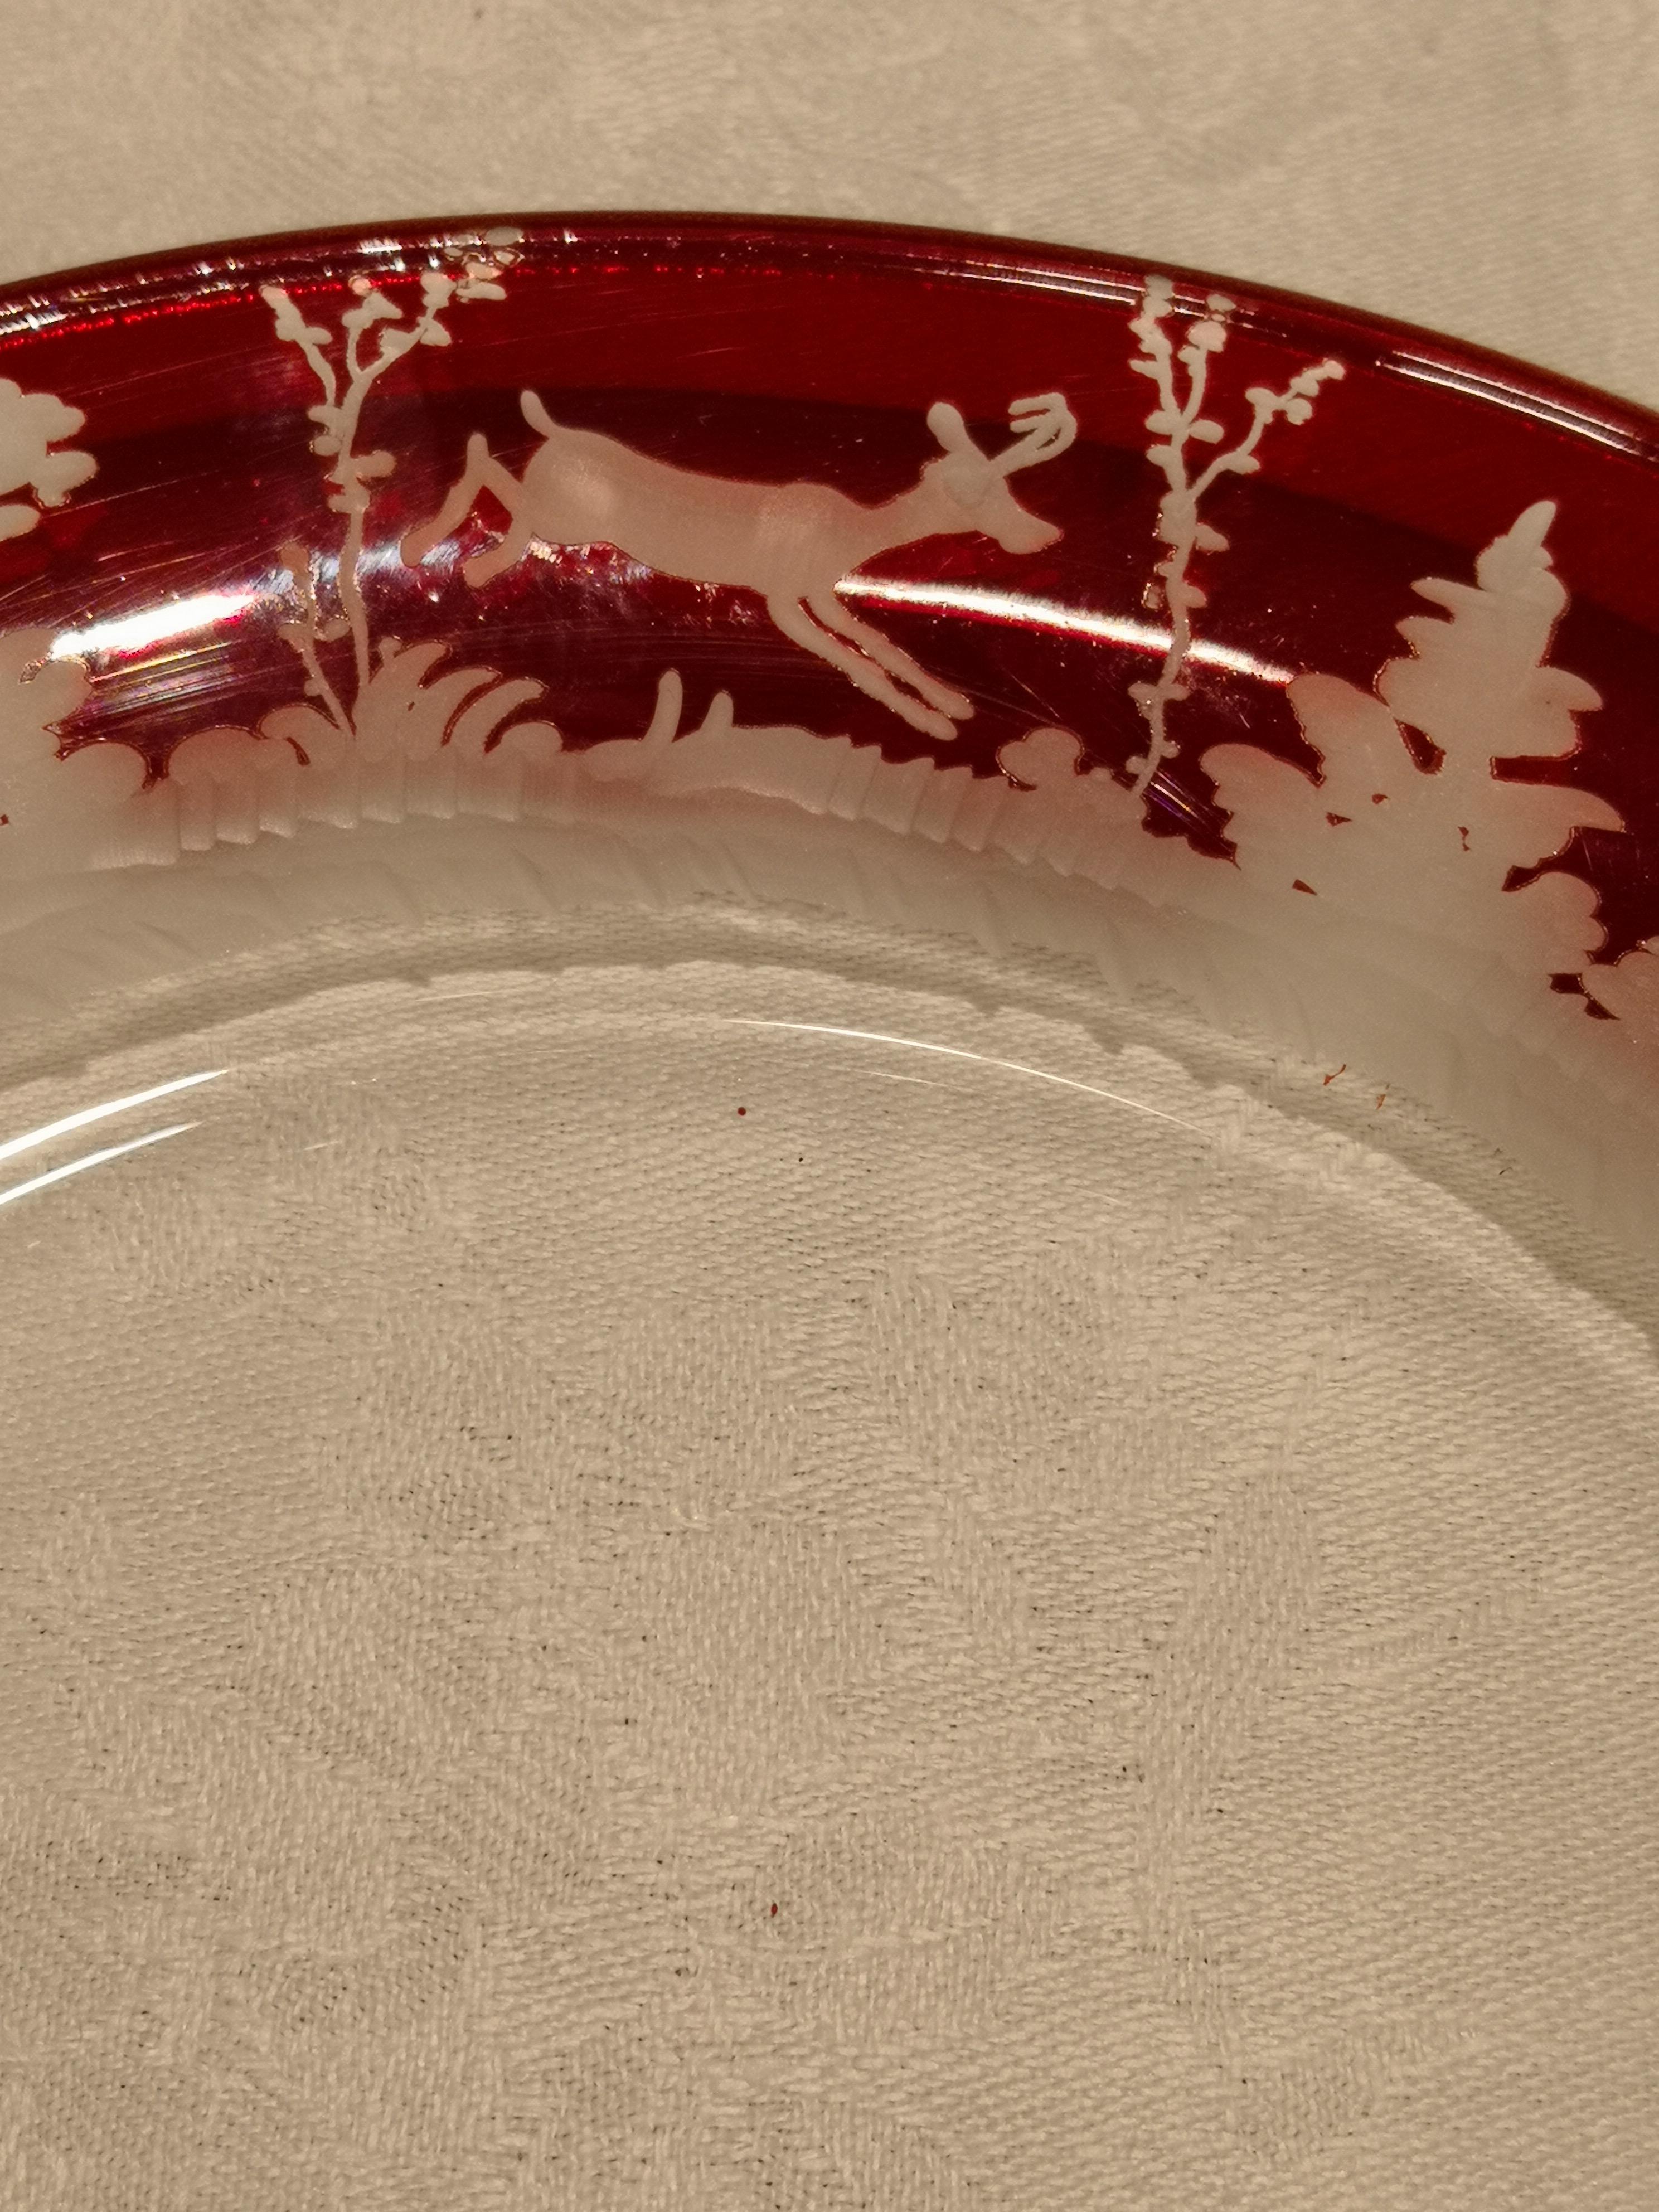 Ensemble de six assiettes en cristal rouge avec un décor de chasse en forêt noire antique gravé à main levée sur tout le pourtour. Le charmant décor gravé à la main représente un décor de chasse avec des cerfs, des lapins et des arbres dans le style